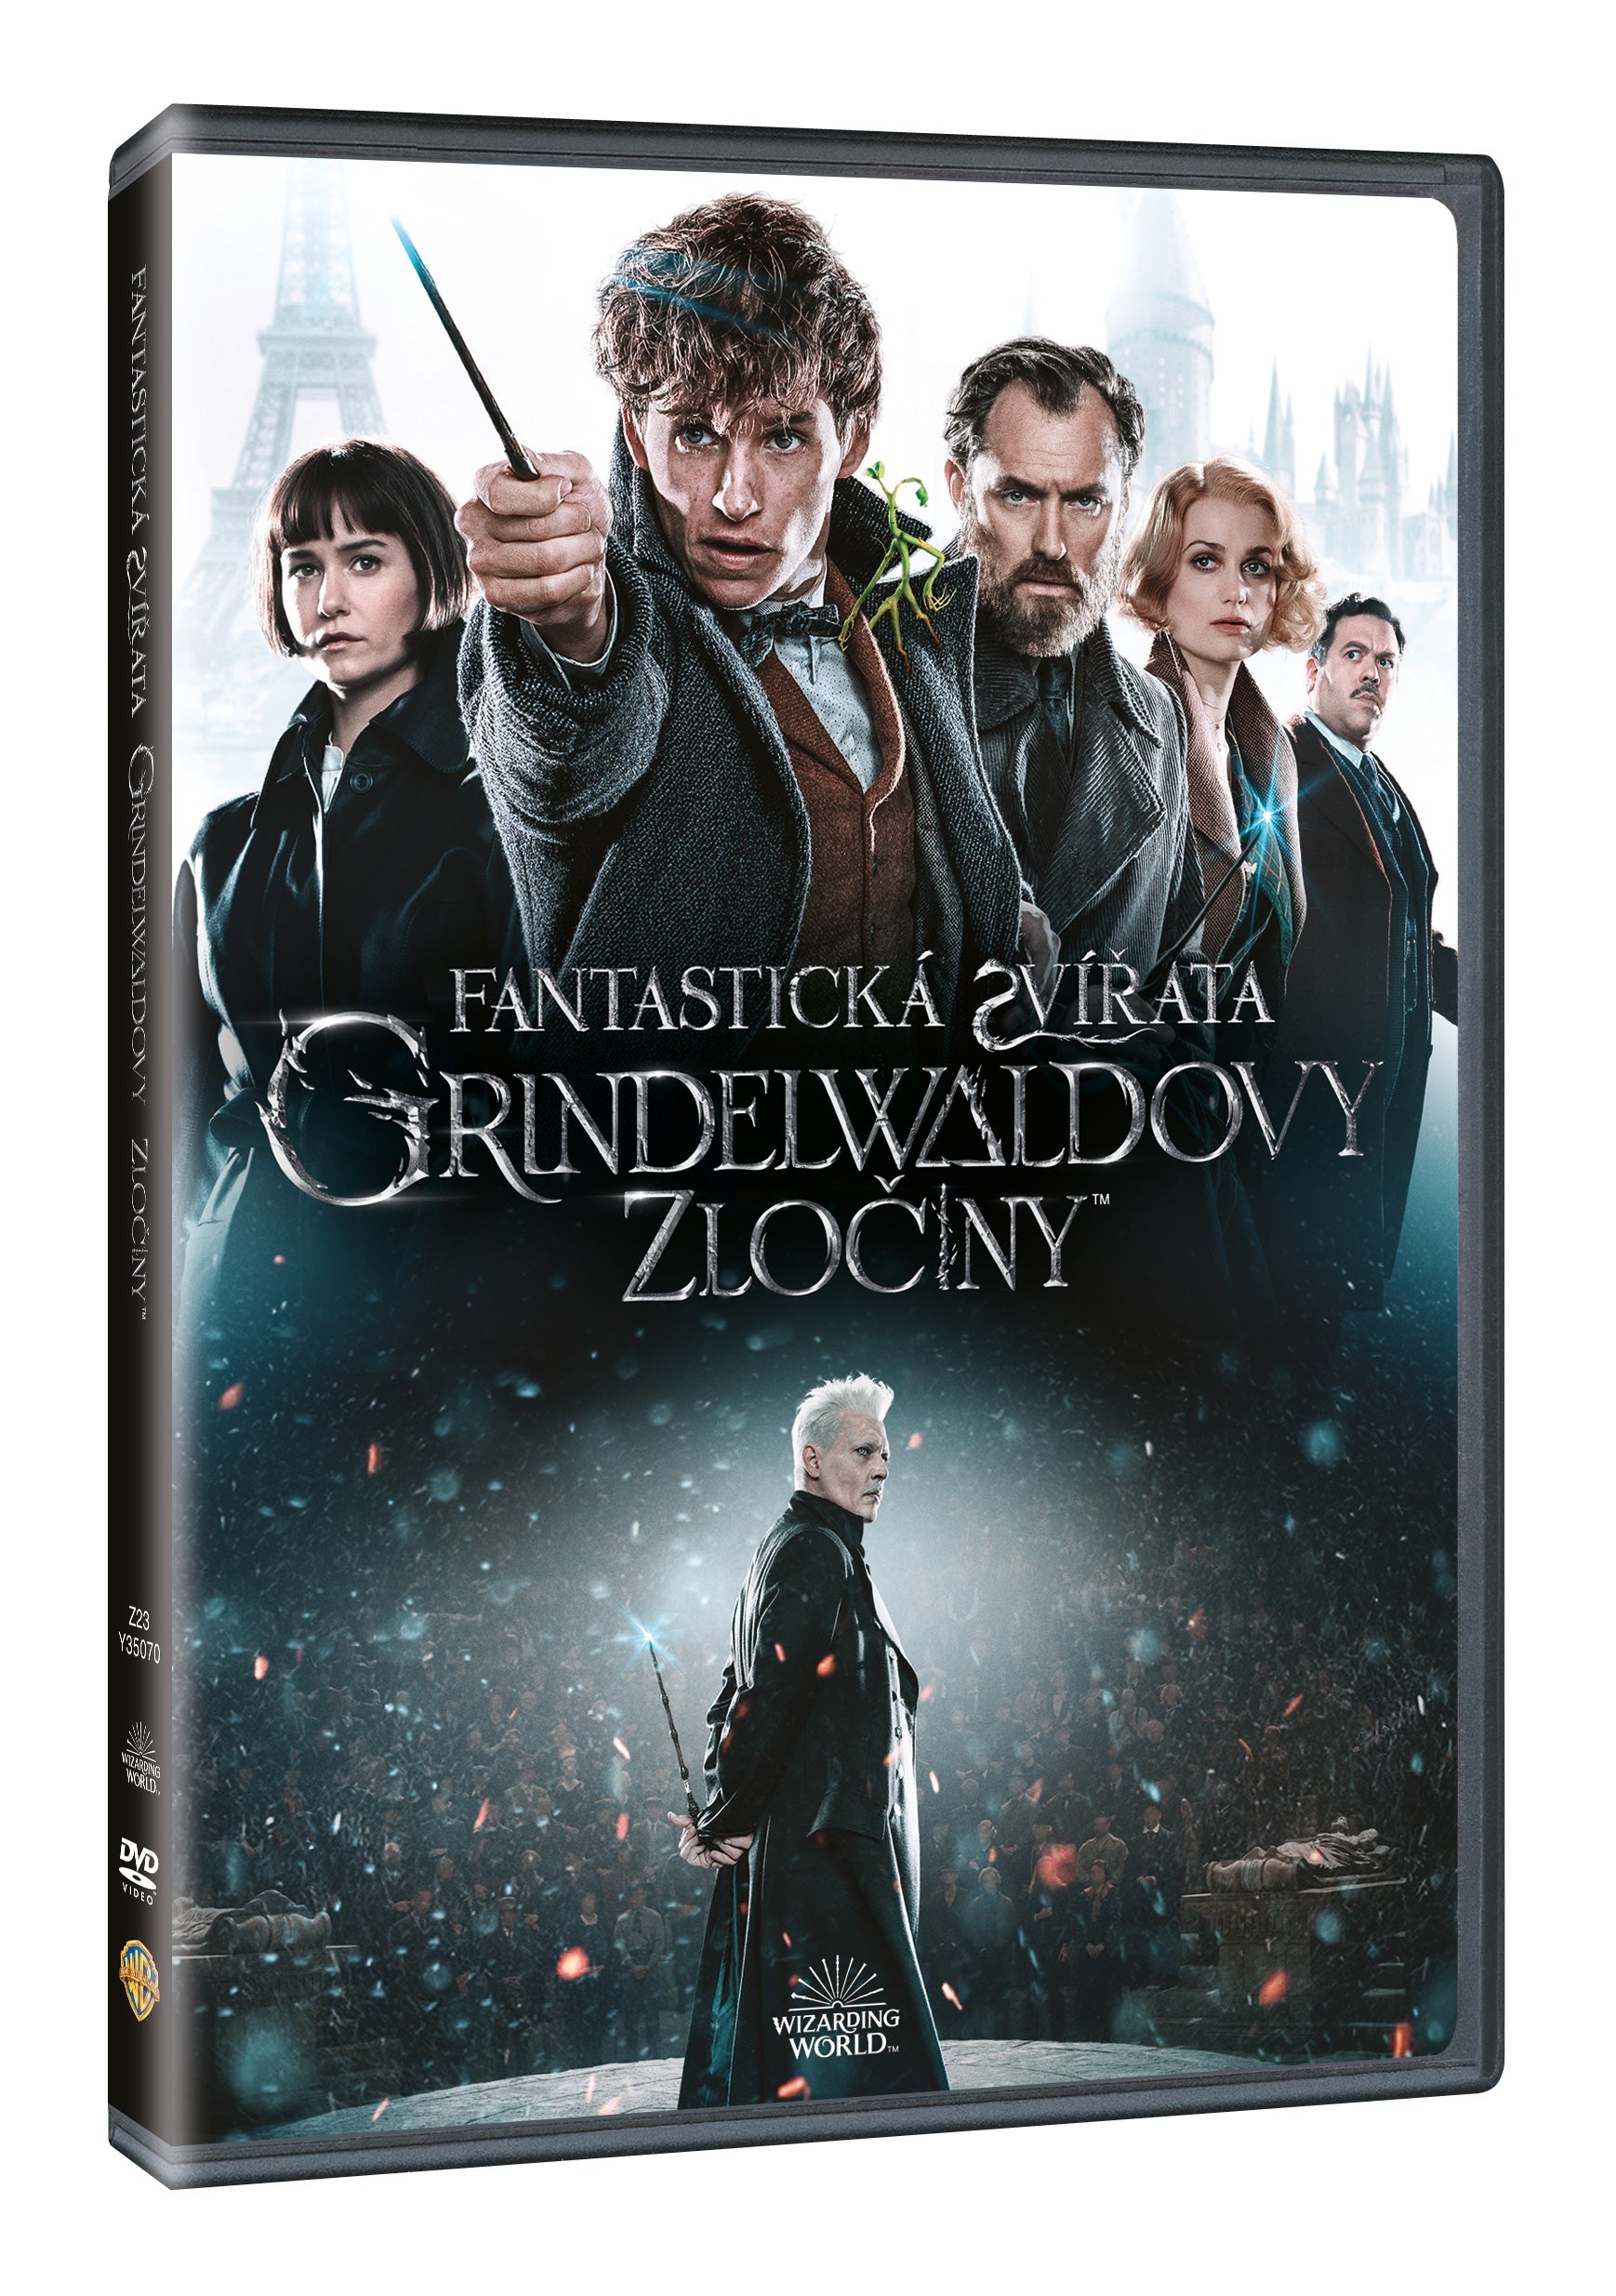 Fantasticka Zvirata: Grindelwaldovy Zlociny DVD / Phantastische Tierwesen: Grindelwalds Verbrechen